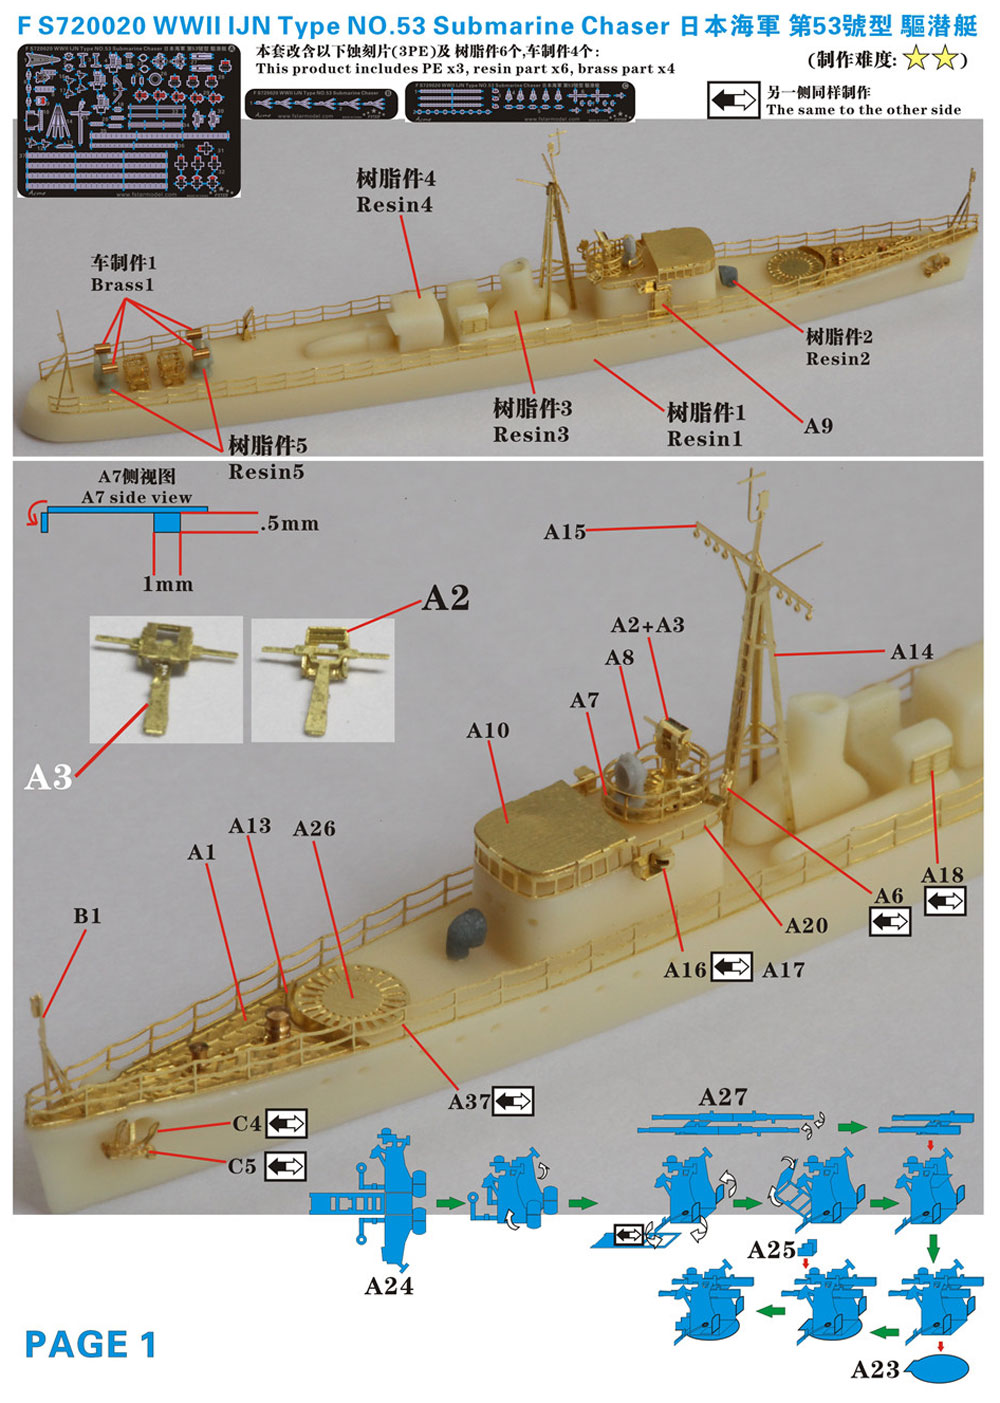 日本海軍 第53号型 駆潜艇 レジン (ファイブスターモデル 1/700 艦船 レジンキット No.FS720020) 商品画像_3